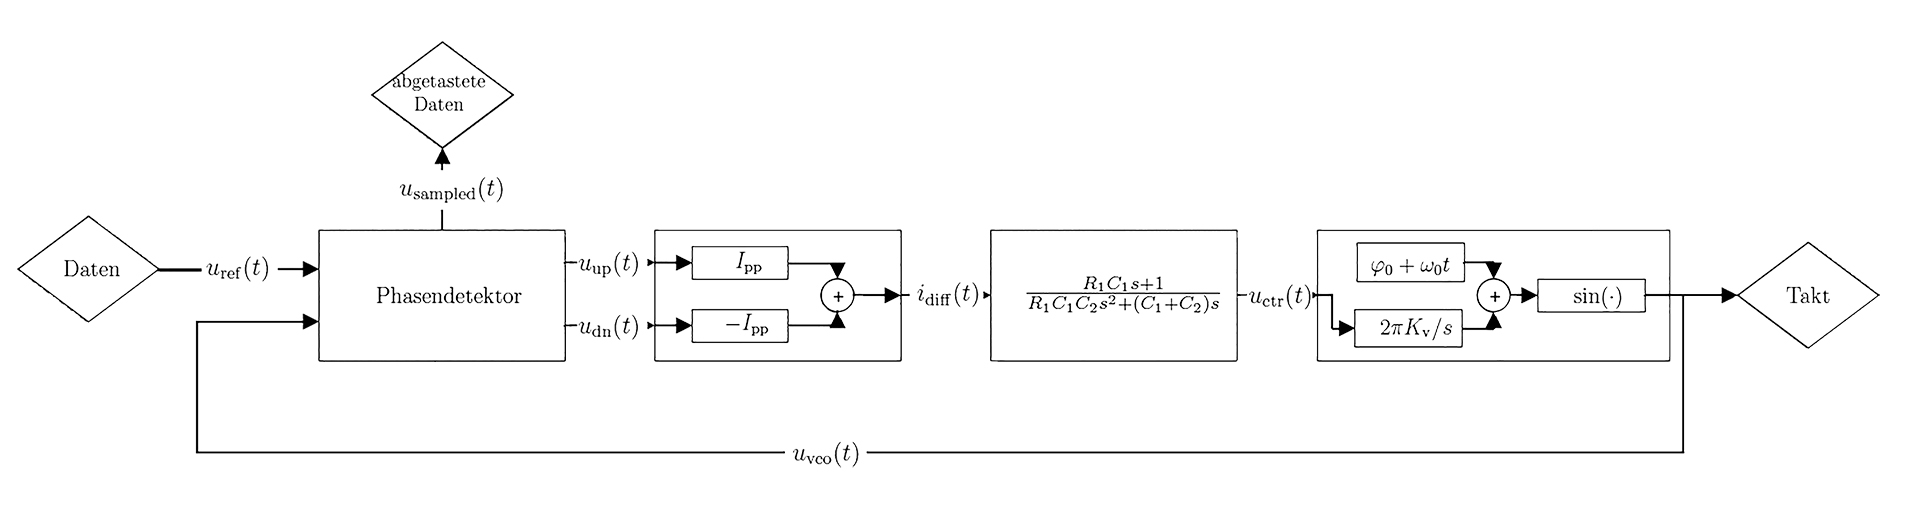 Vereinfachtes Blockschaltbild eines typischen Phasenregelkreises zur Takt- und Datenrückgewinnung.